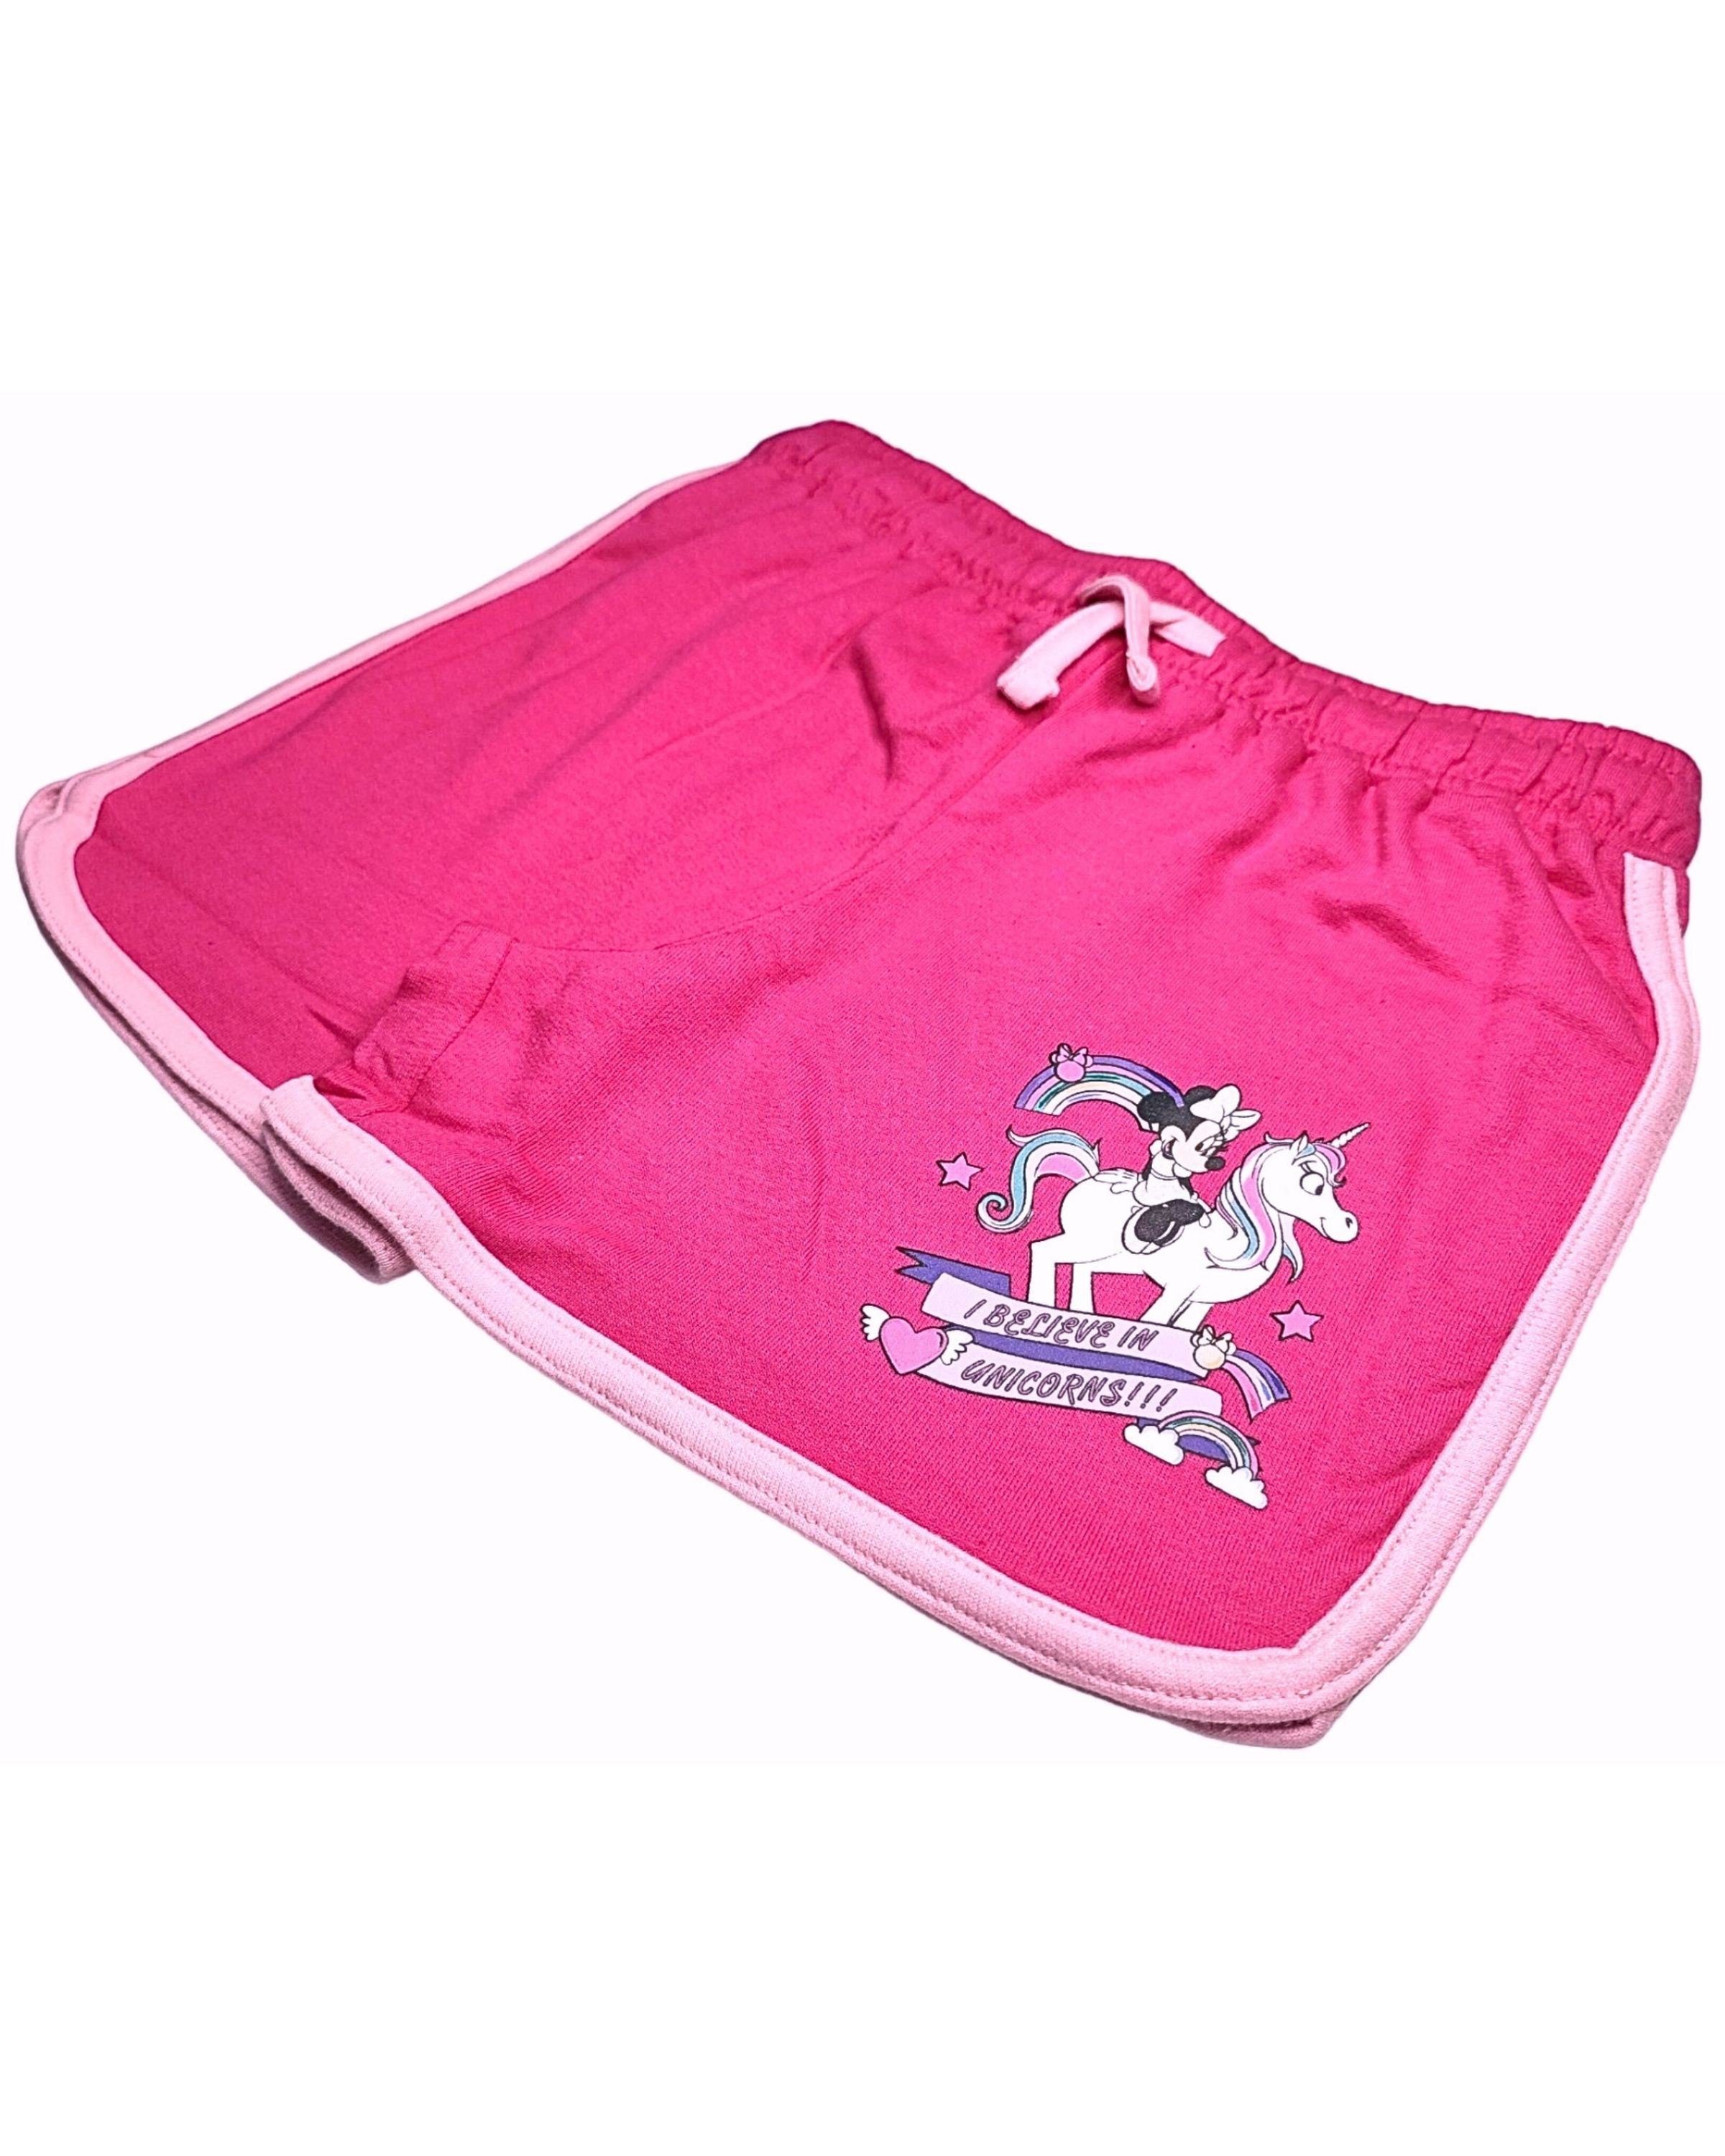 Gr. believe Baumwolle Minnie I Disney Hose Mädchen - Unicorns Shorts in cm - 98 128 Pink Maus Minnie aus kurze Mouse